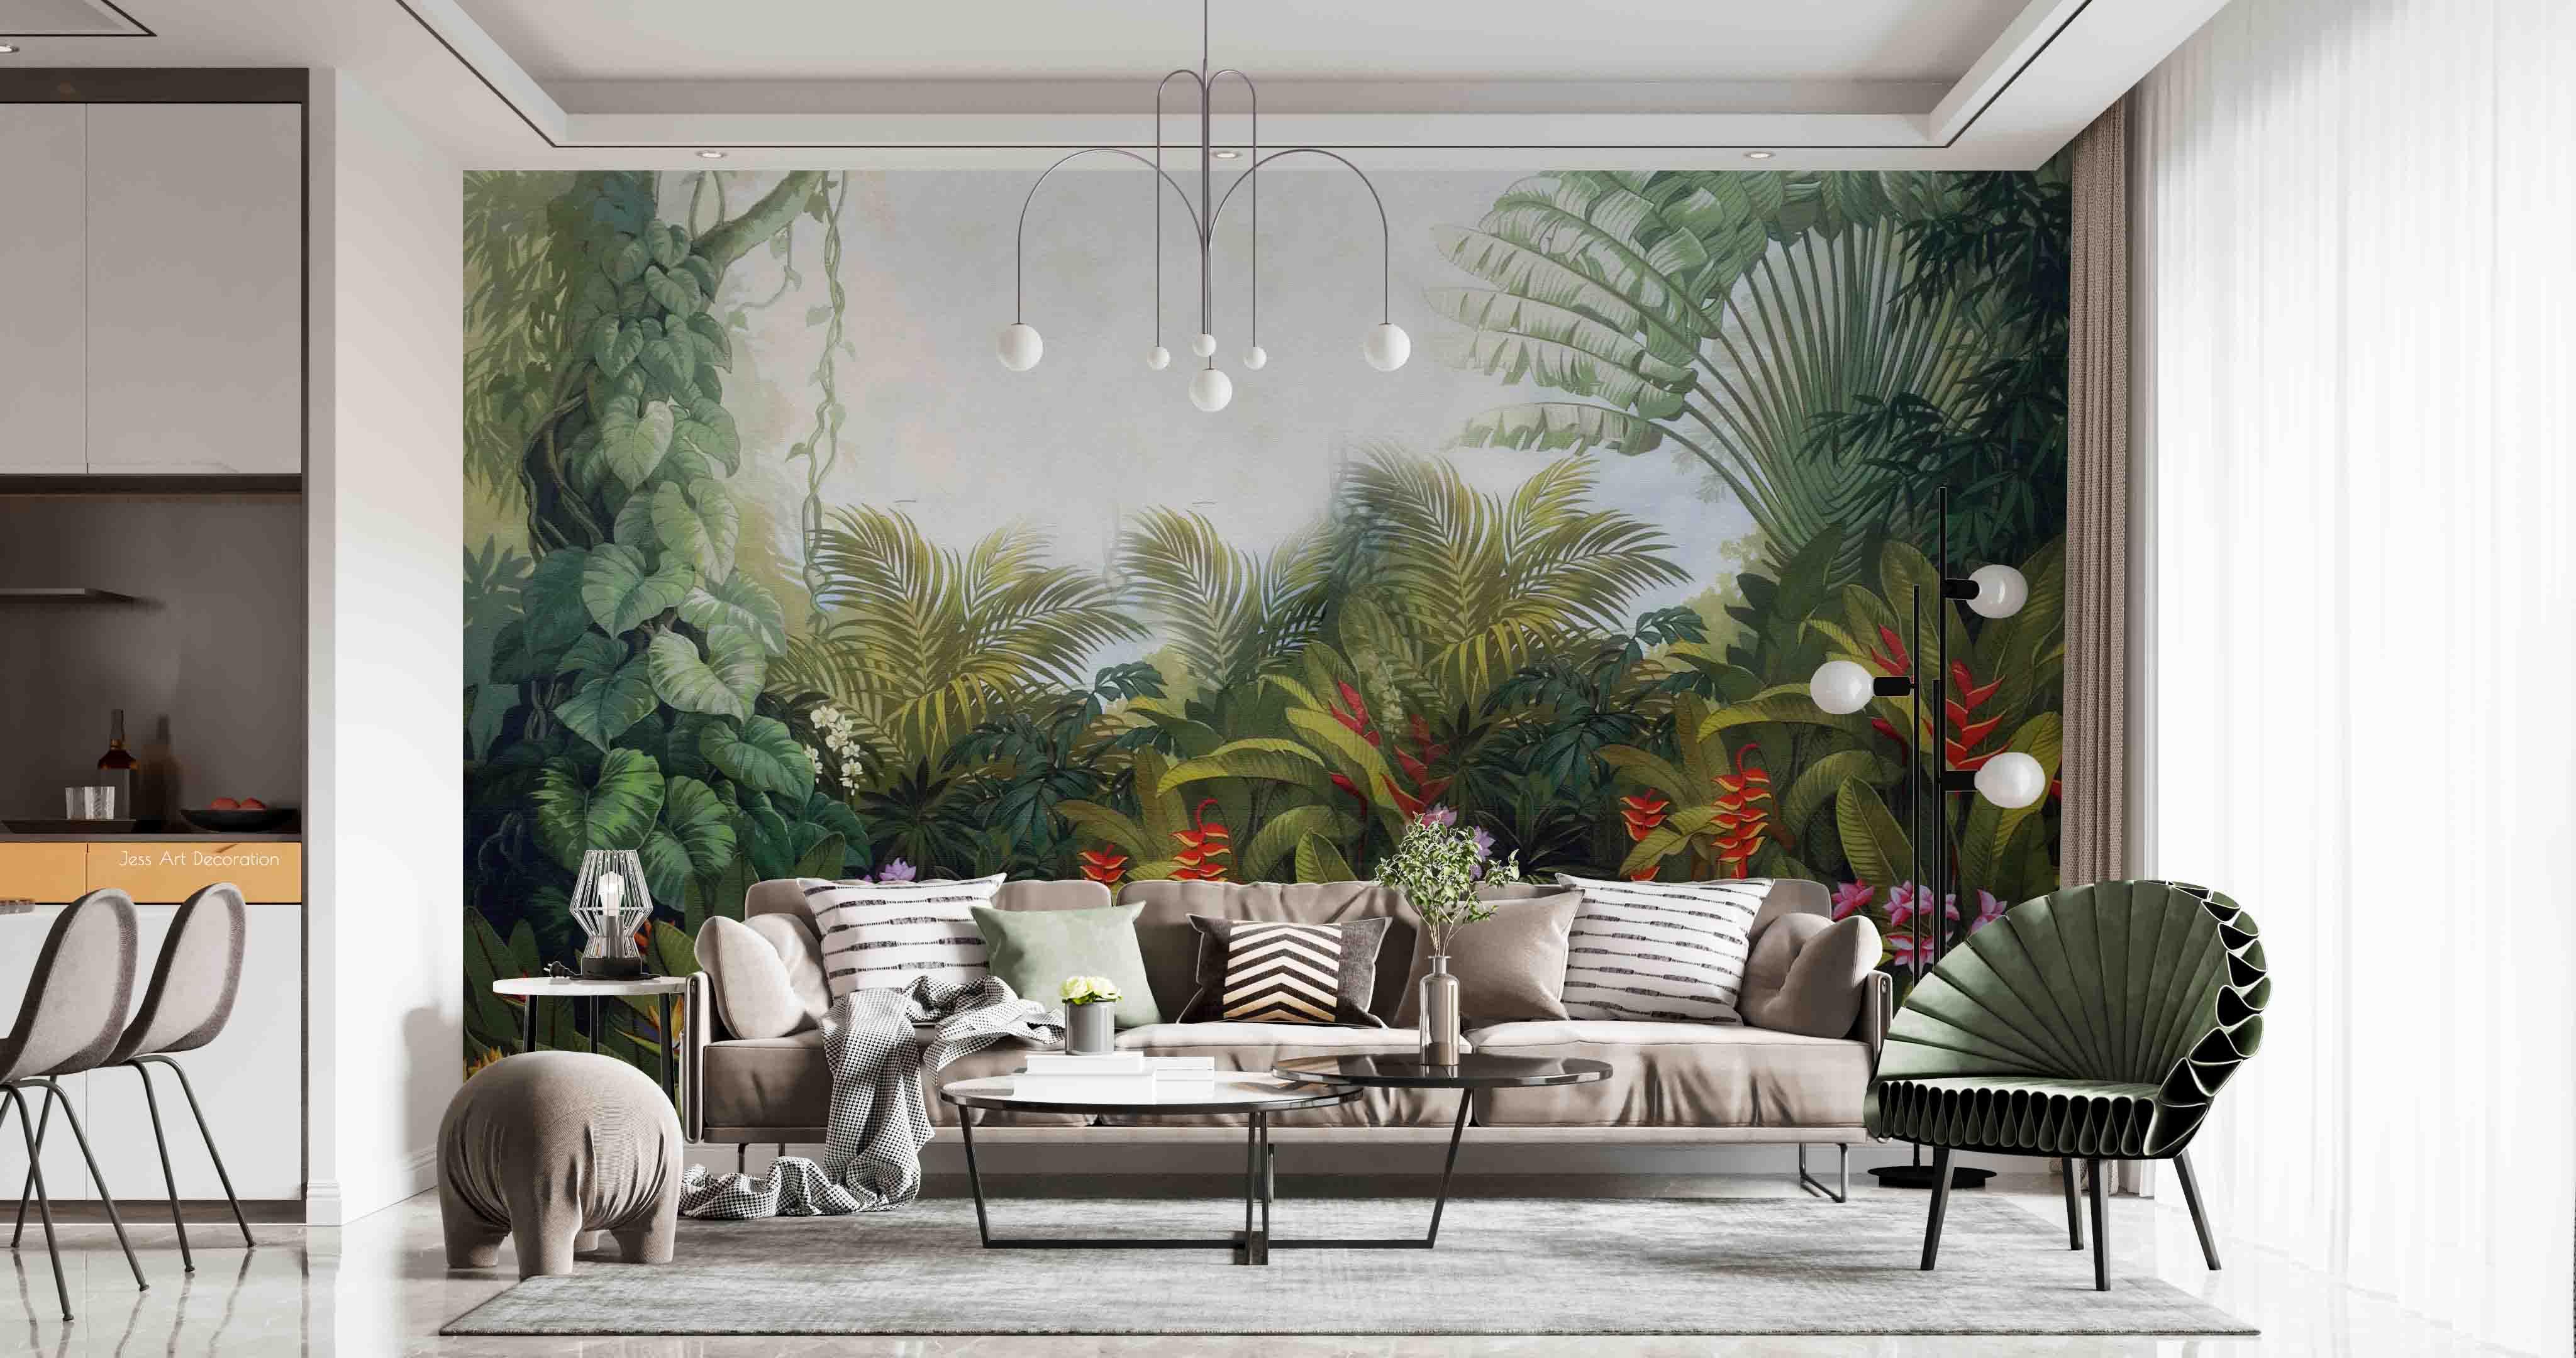 3D Tropical Forest Plant Flower Wall Mural Wallpaper GD 2564- Jess Art Decoration